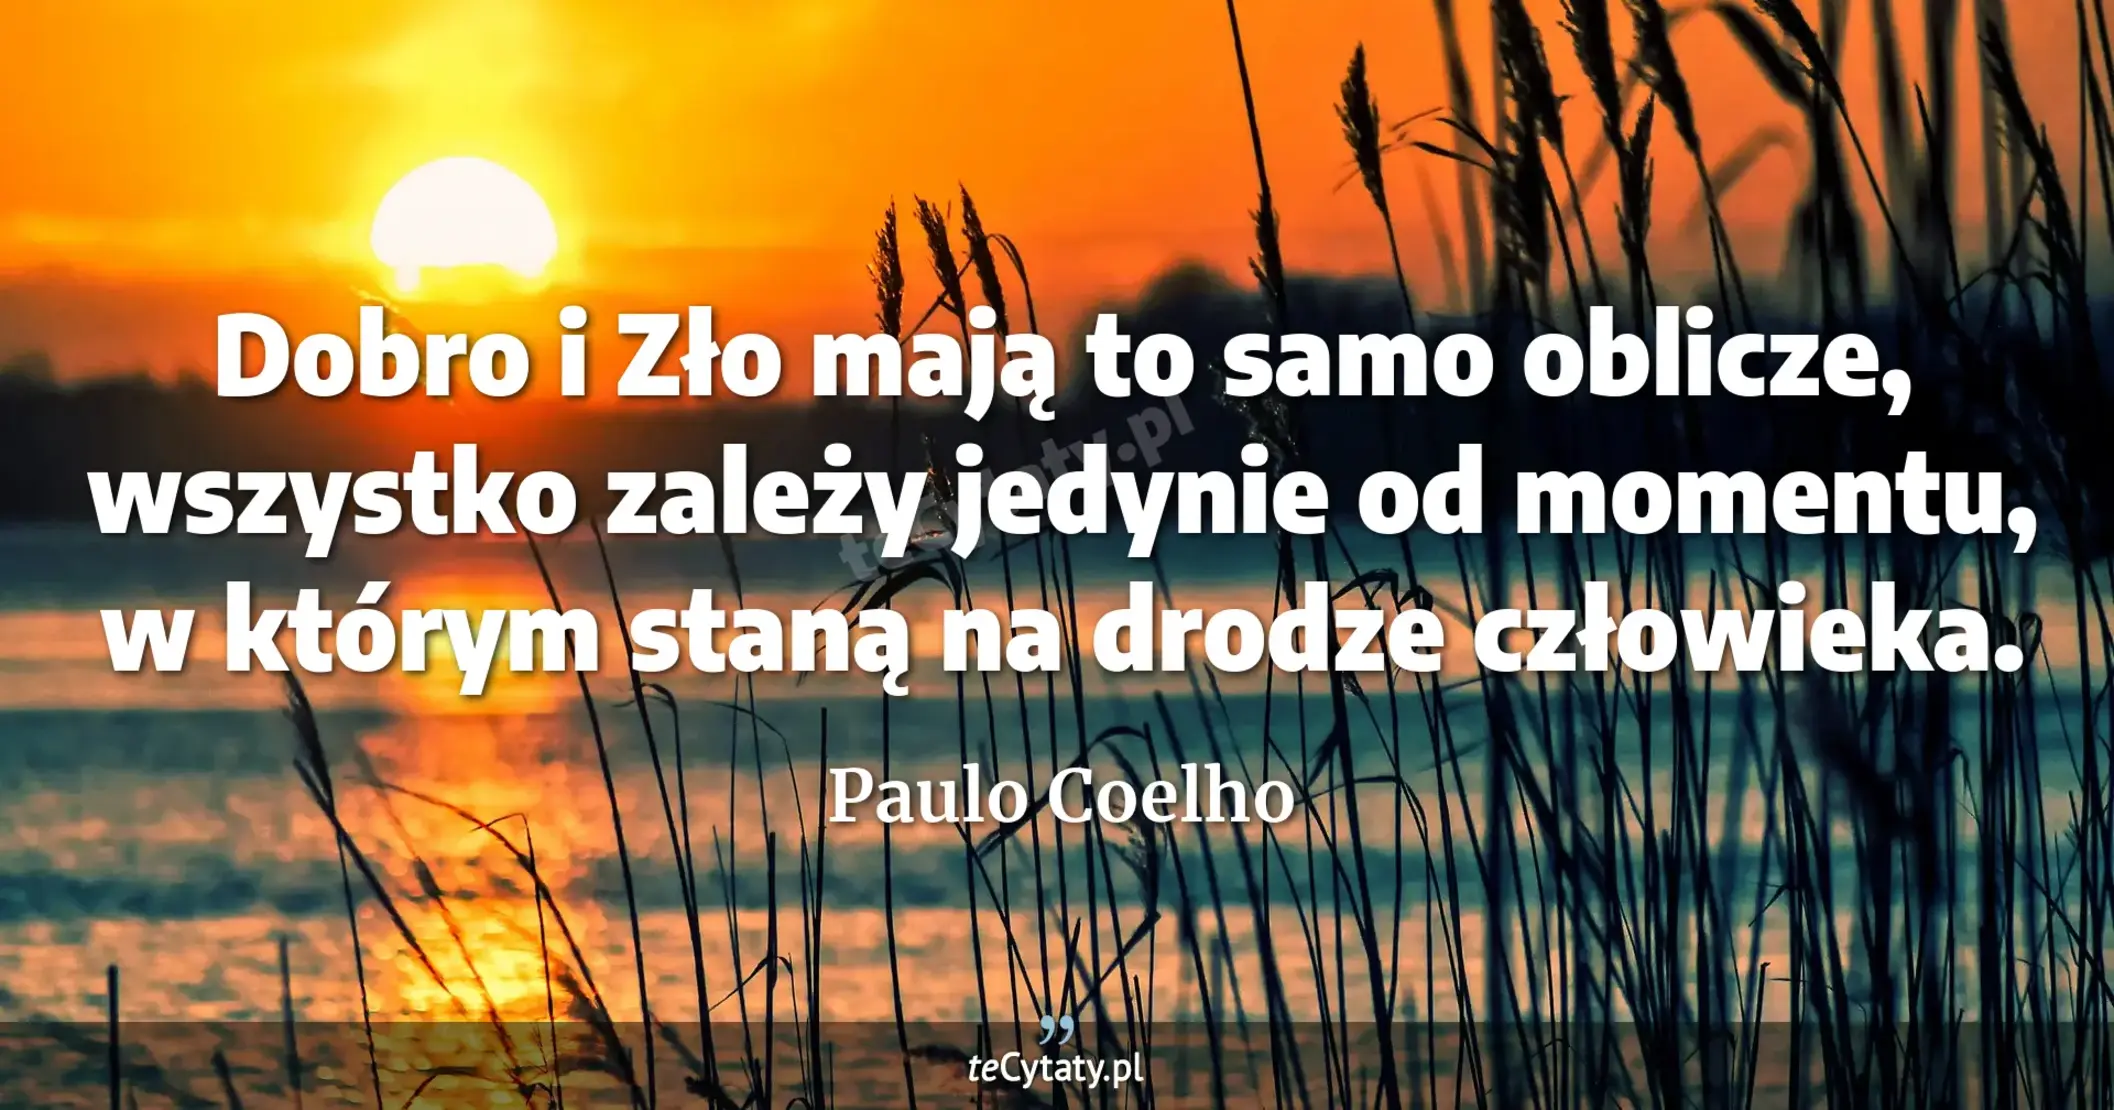 Dobro i Zło mają to samo oblicze, wszystko zależy jedynie od momentu, w którym staną na drodze człowieka. - Paulo Coelho